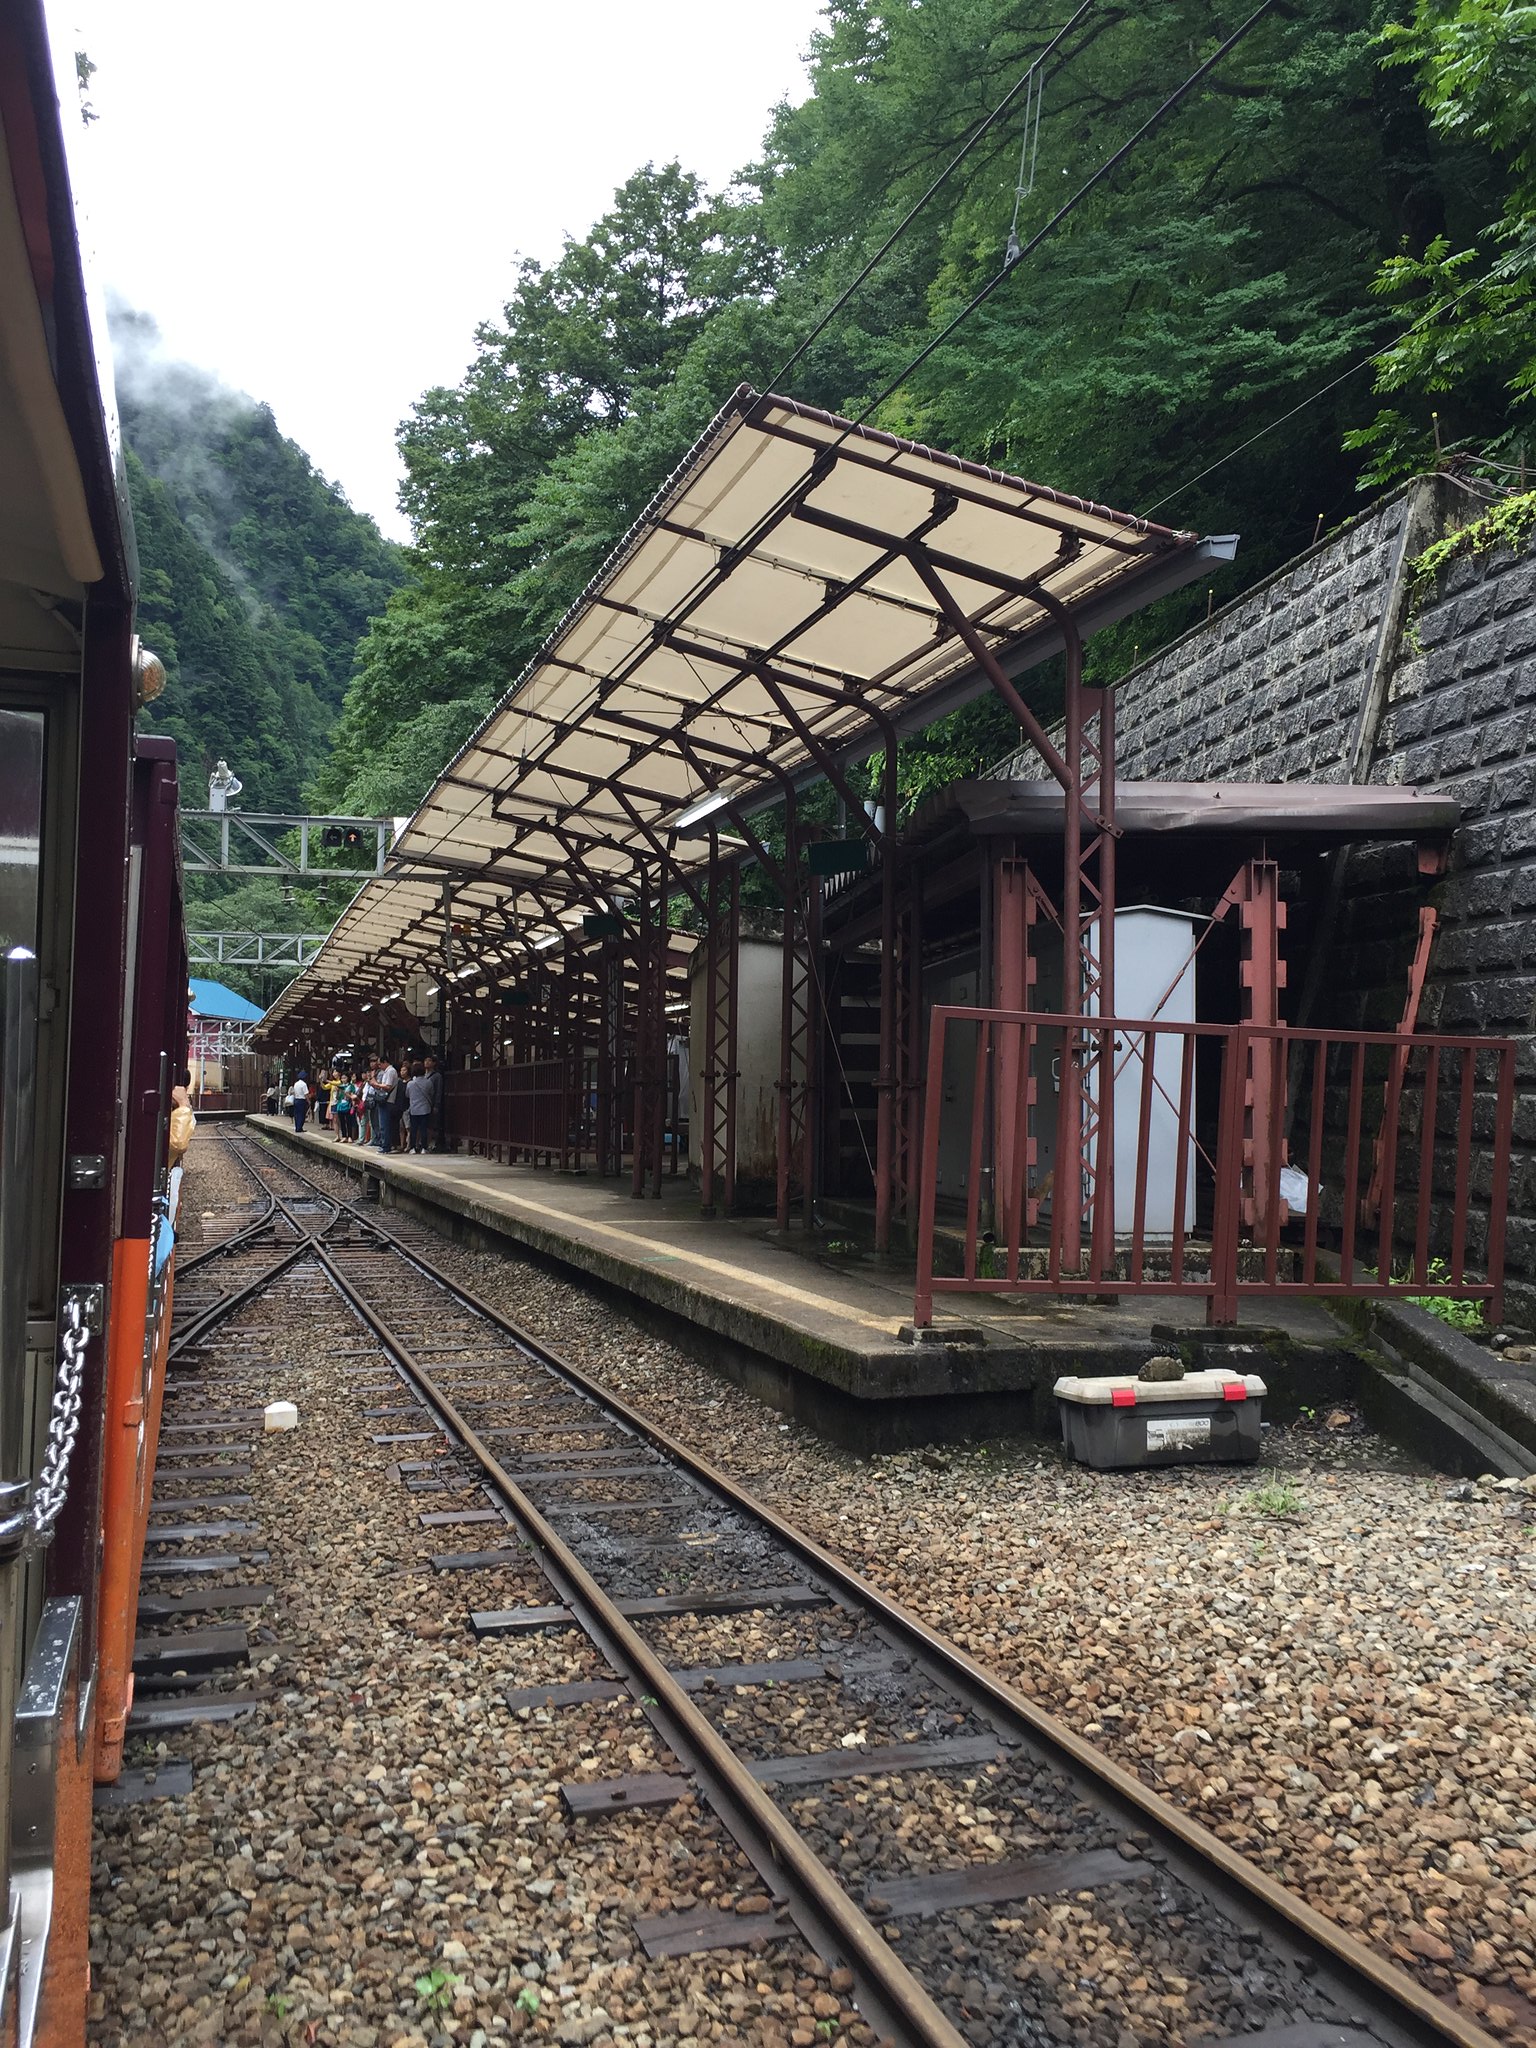 Approaching Kanetsuri Station